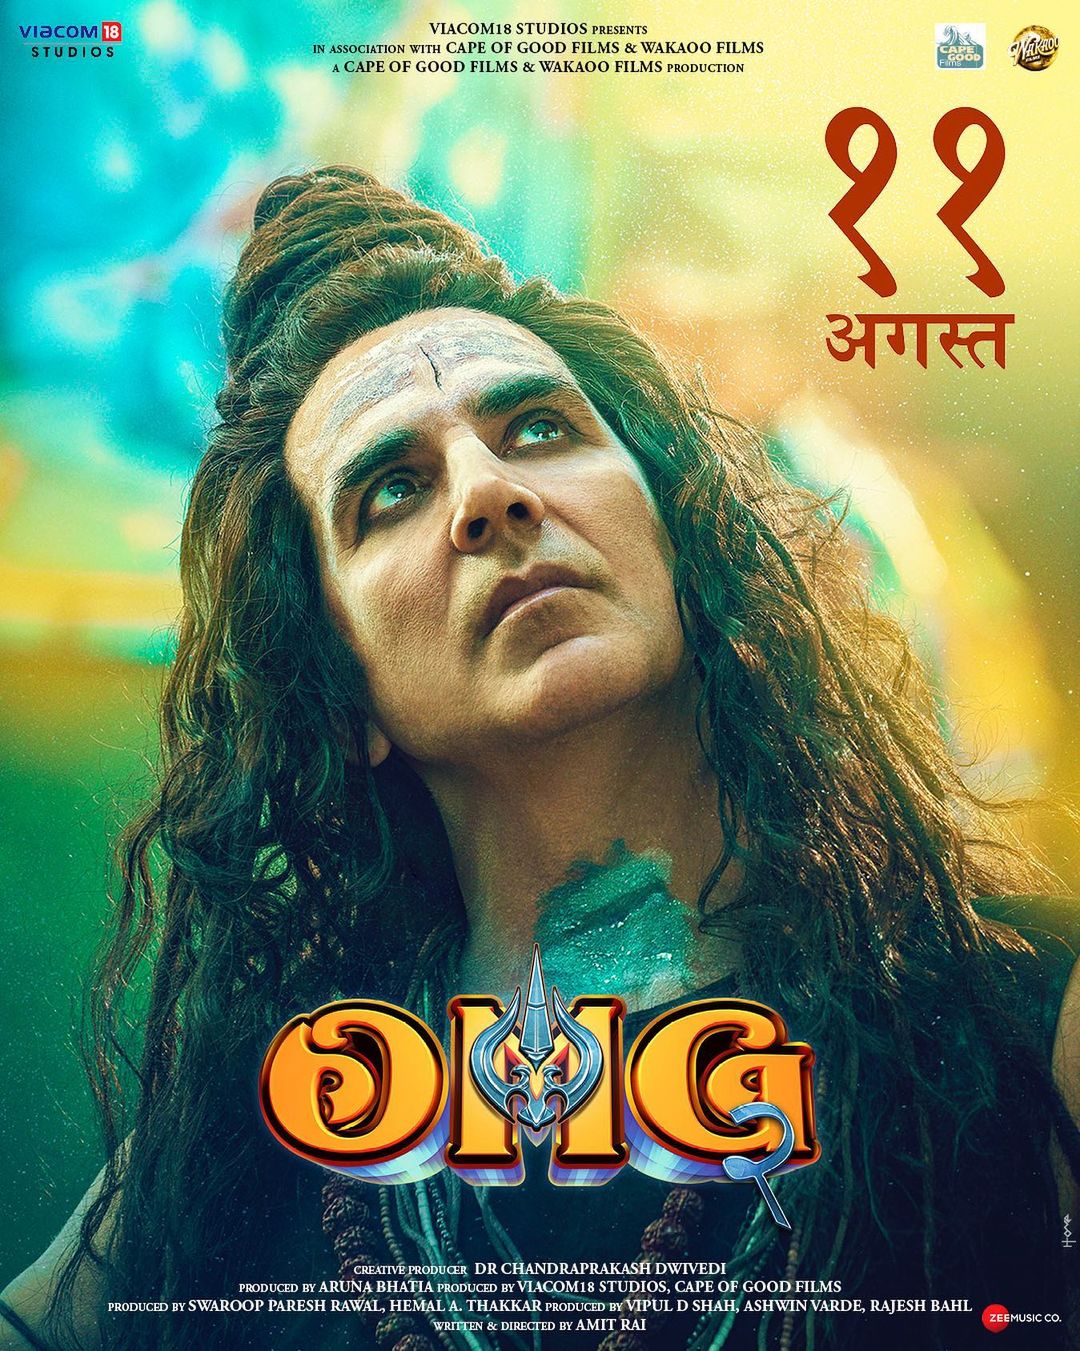 Akshay Kumar OMG 2 Poster